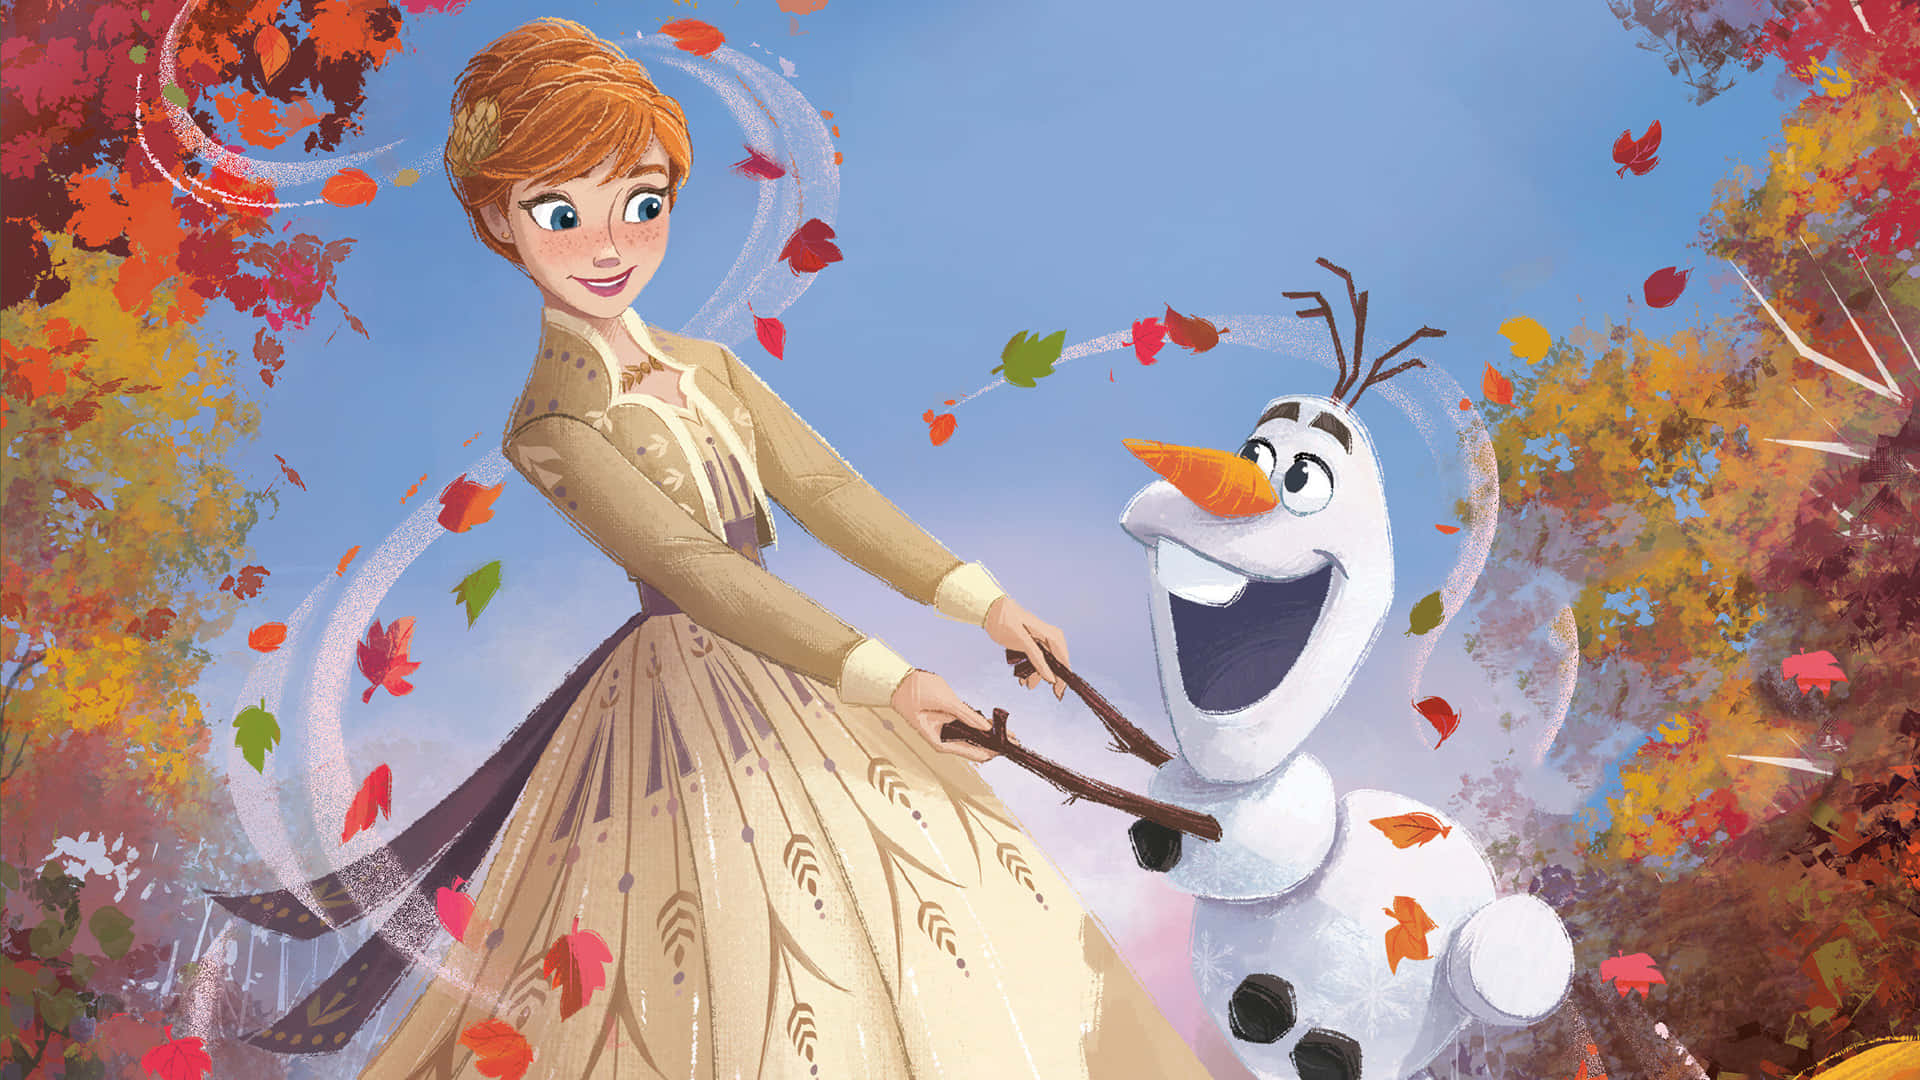 Tauchemit Elsa In Frozen 2 Ins Unbekannte Ein.